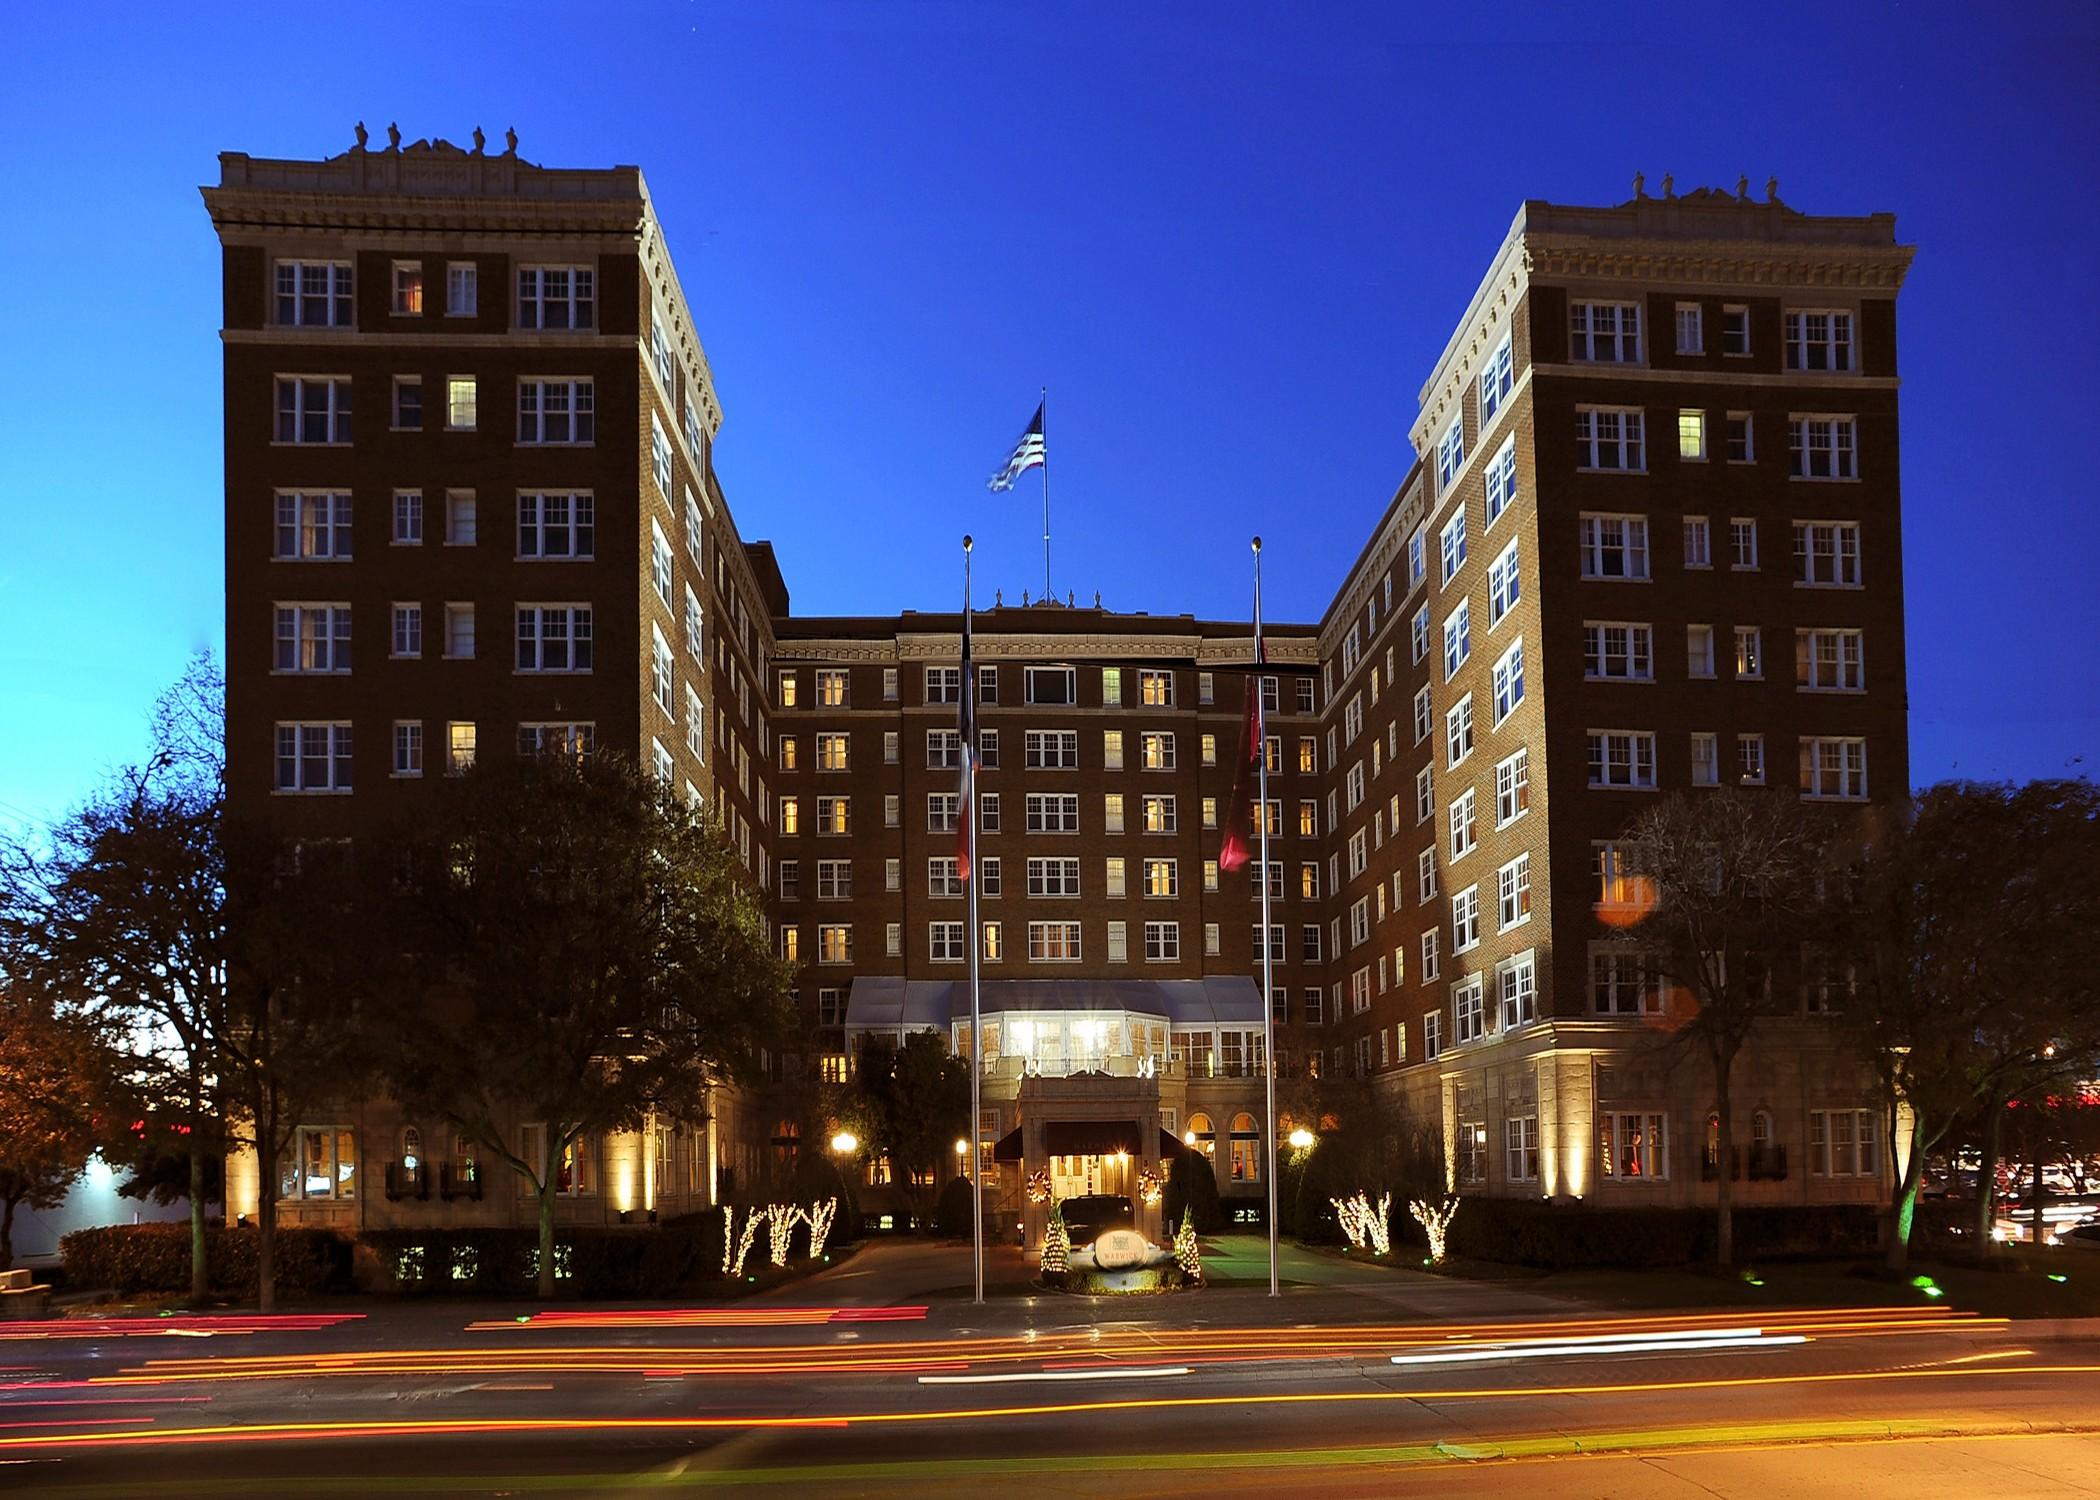 Warwick Melrose Hotel Dallas Kültér fotó